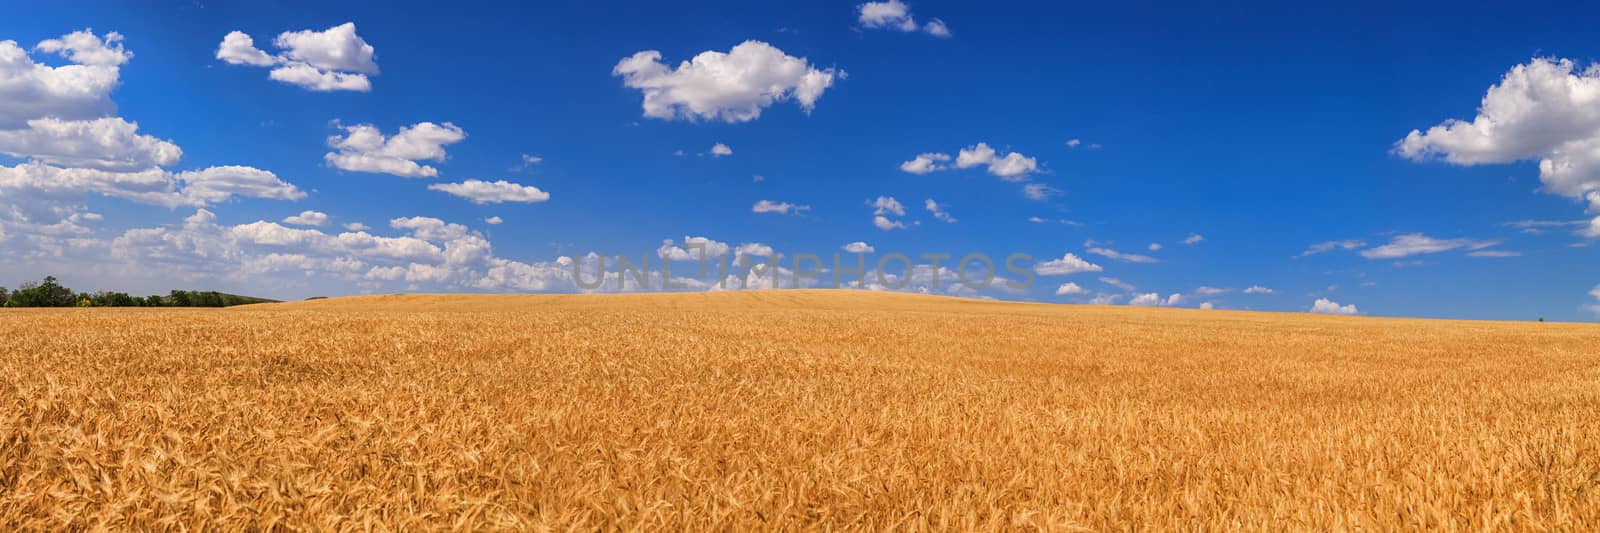 Wheat field   by fogen